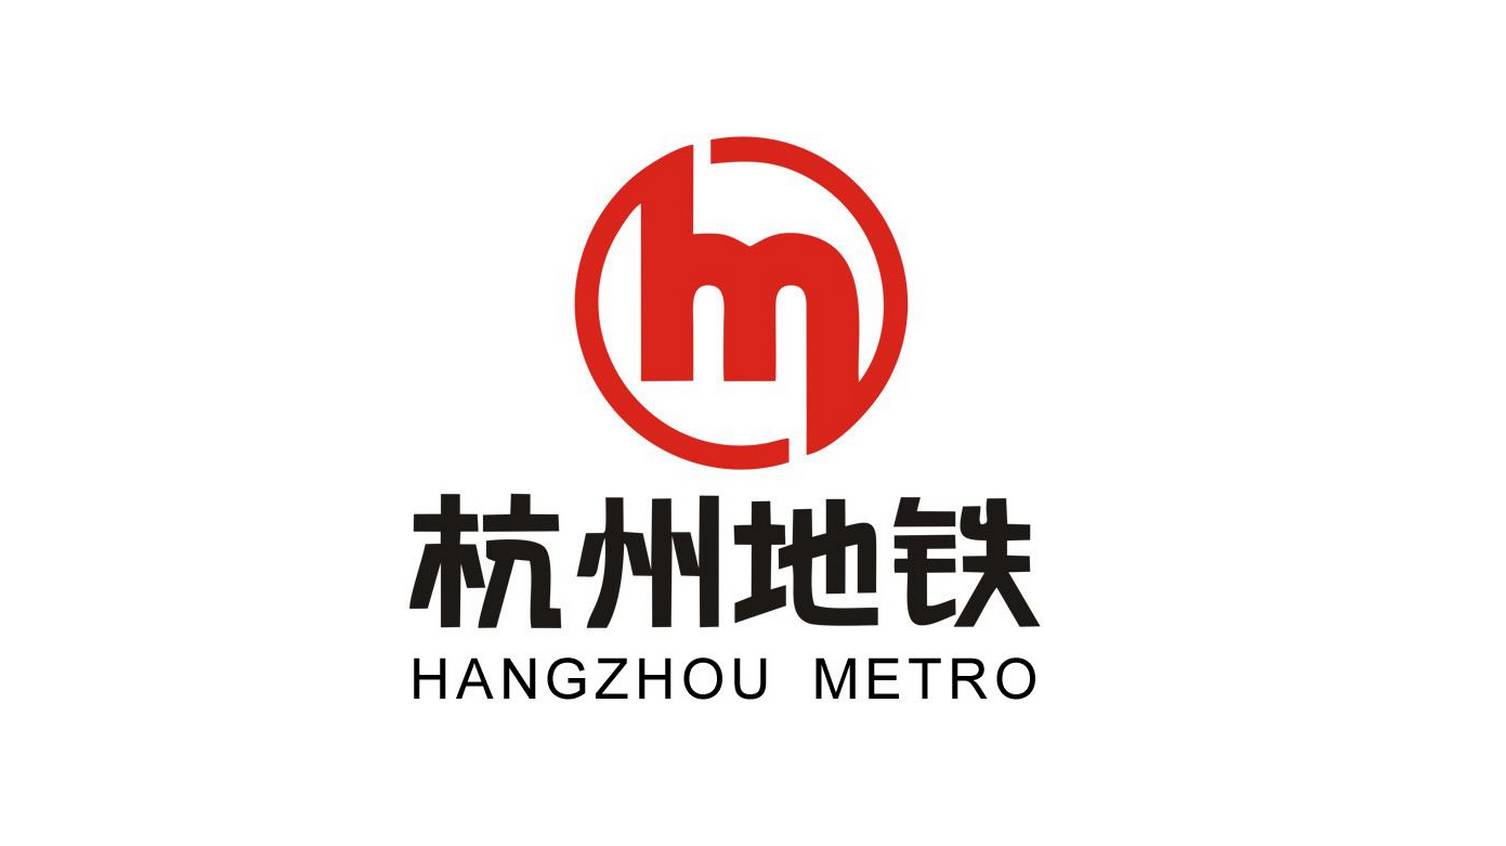 10香港地铁的标志由著名设计师李永铨设计,标志的含义为:1,表示香港本